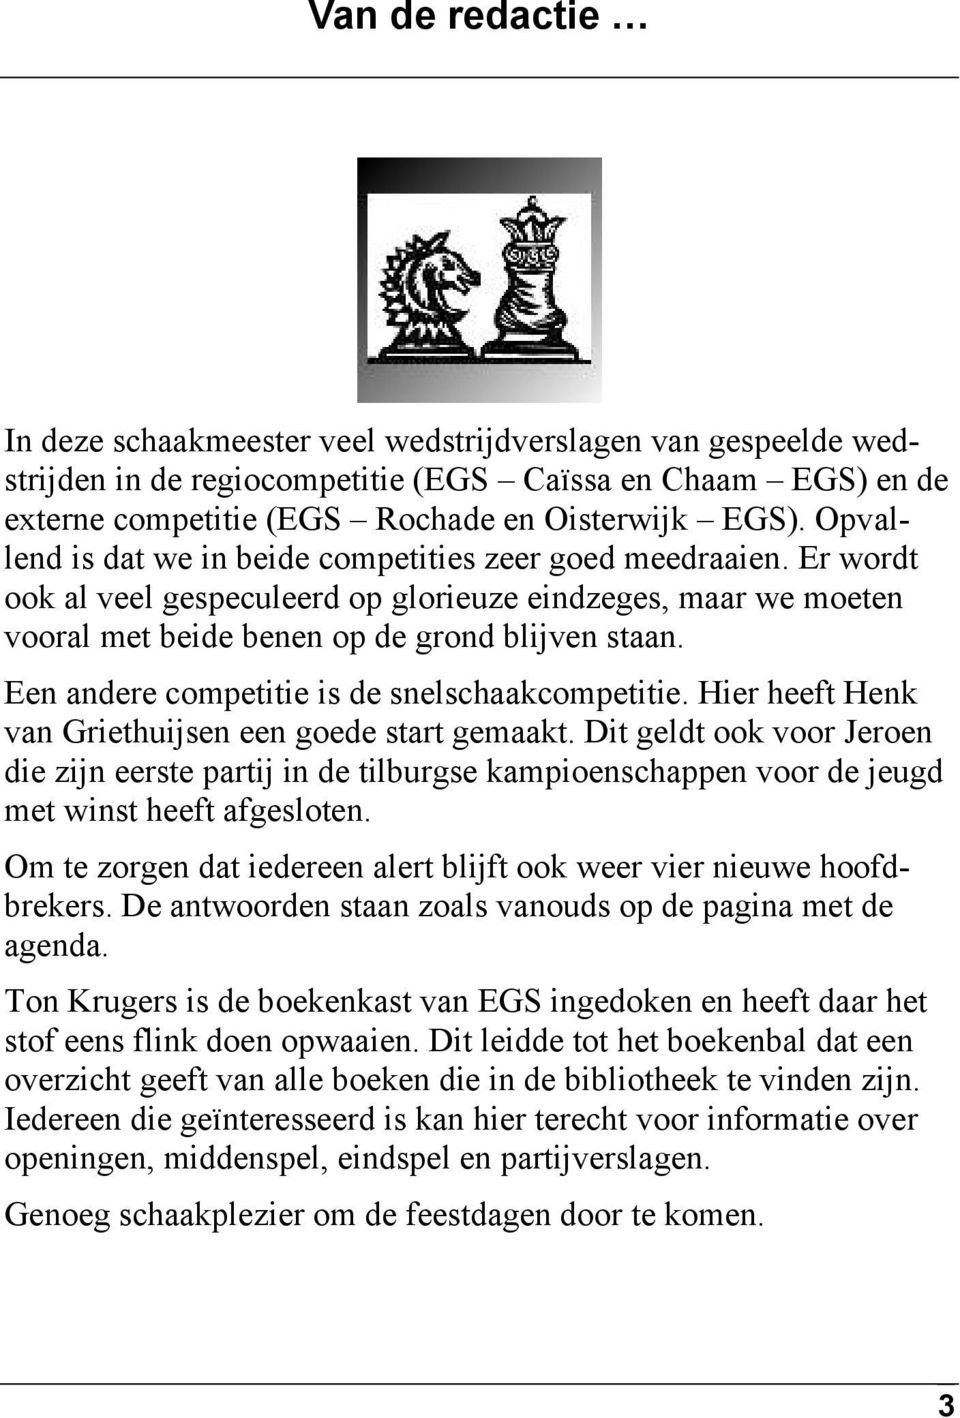 Een andere competitie is de snelschaakcompetitie. Hier heeft Henk van Griethuijsen een goede start gemaakt.